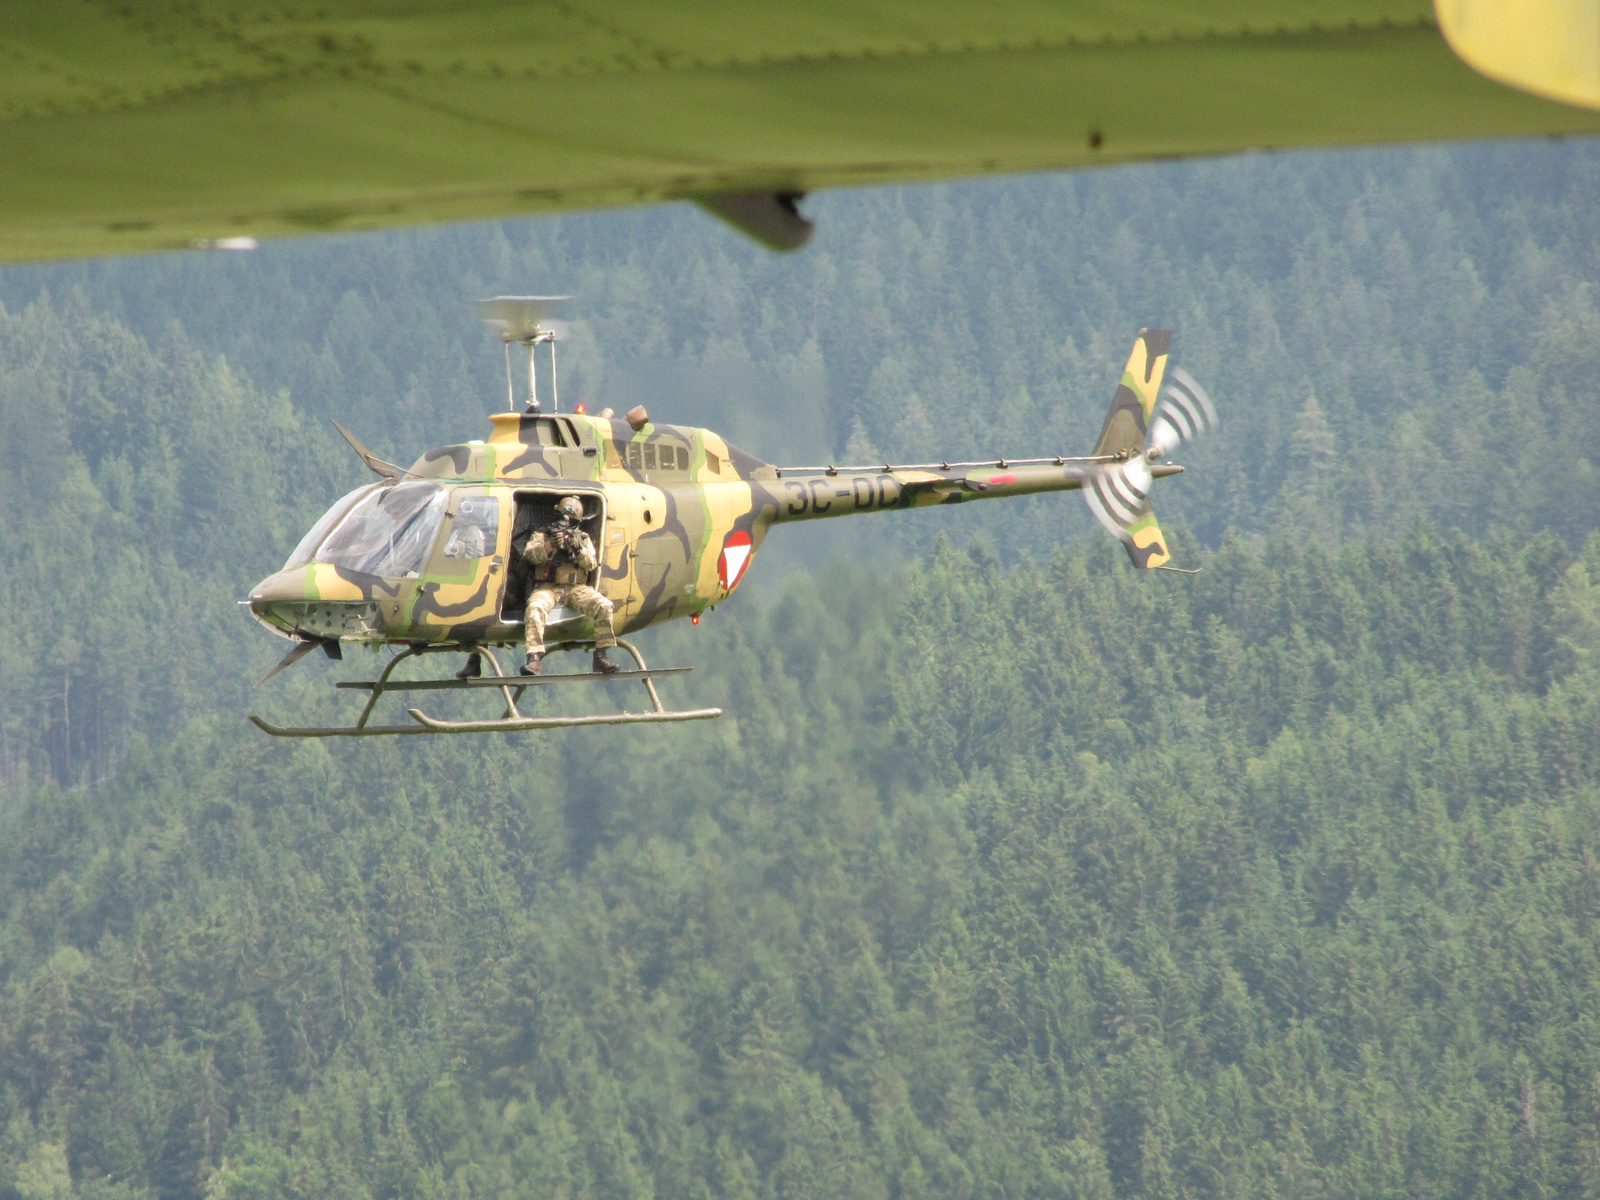 Zeltweg, Airpower 2013, OH-58 KIOWA, SzG3